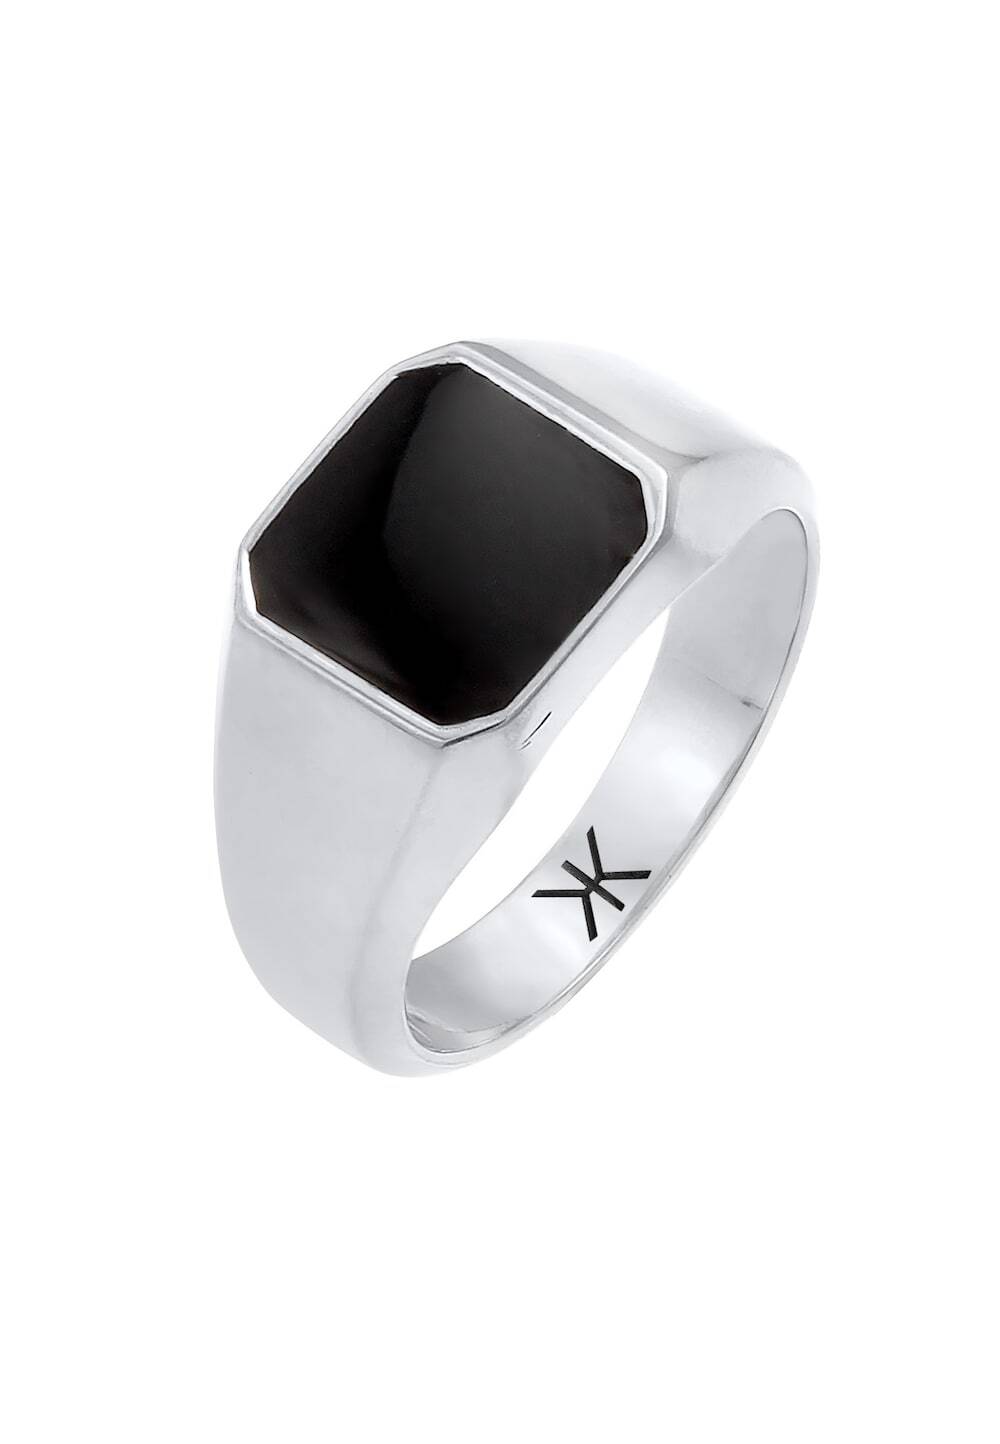 KUZZOI KUZZOI KUZZOI Ring Heren Signet Ring Emaille Zwart Basis Trend in 925 Sterling Zilver verguld Ringen